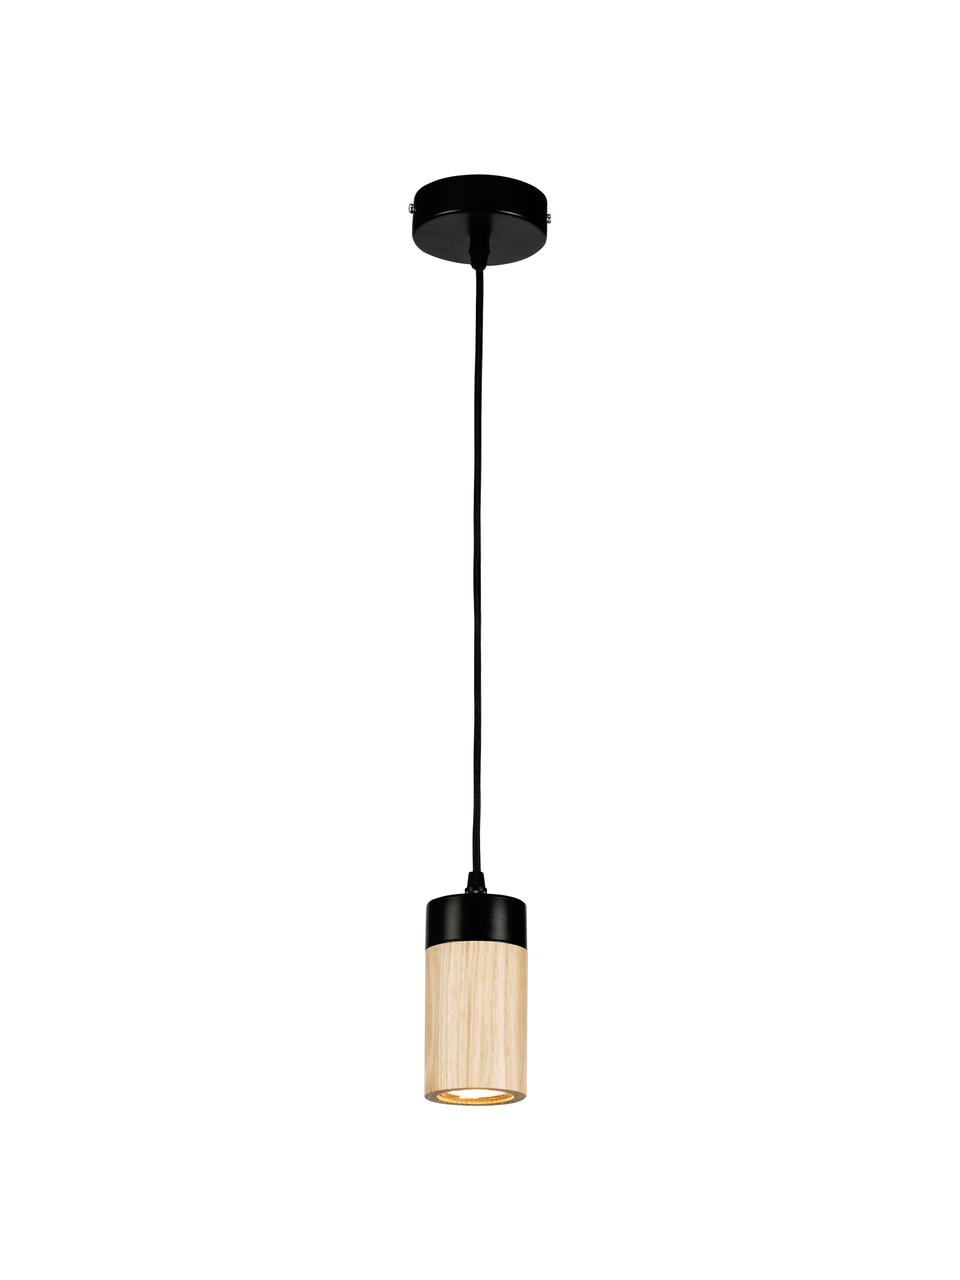 Kleine hanglamp Annick van hout, Lampenkap: eikenhout, geolied, metaa, Baldakijn: gecoat metaal, Zwart, beige, Ø 7 x H 14 cm